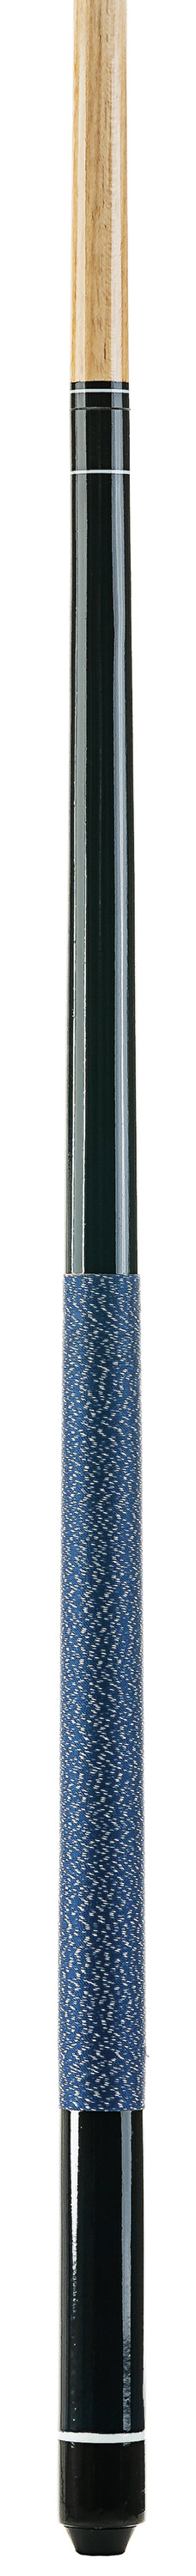 Cue Winner W-2 blue 12 mm screw leather